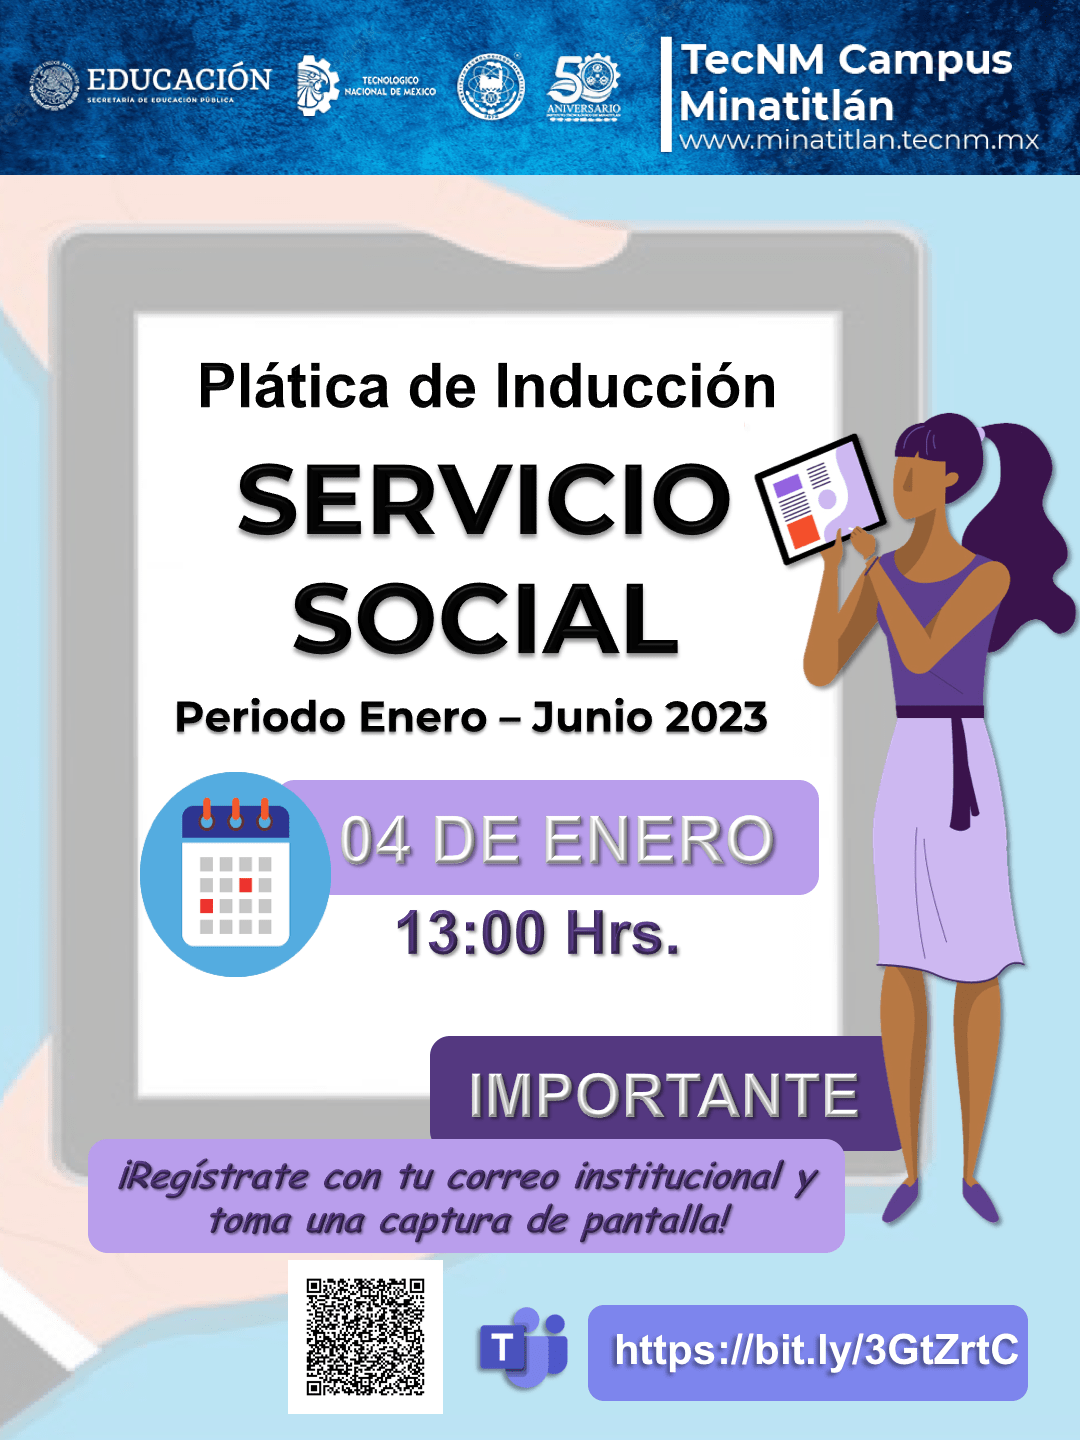 PLÁTICA DE INDUCCIÓN SERVICIO SOCIAL (PERIODO ENERO – JUNIO 2023)